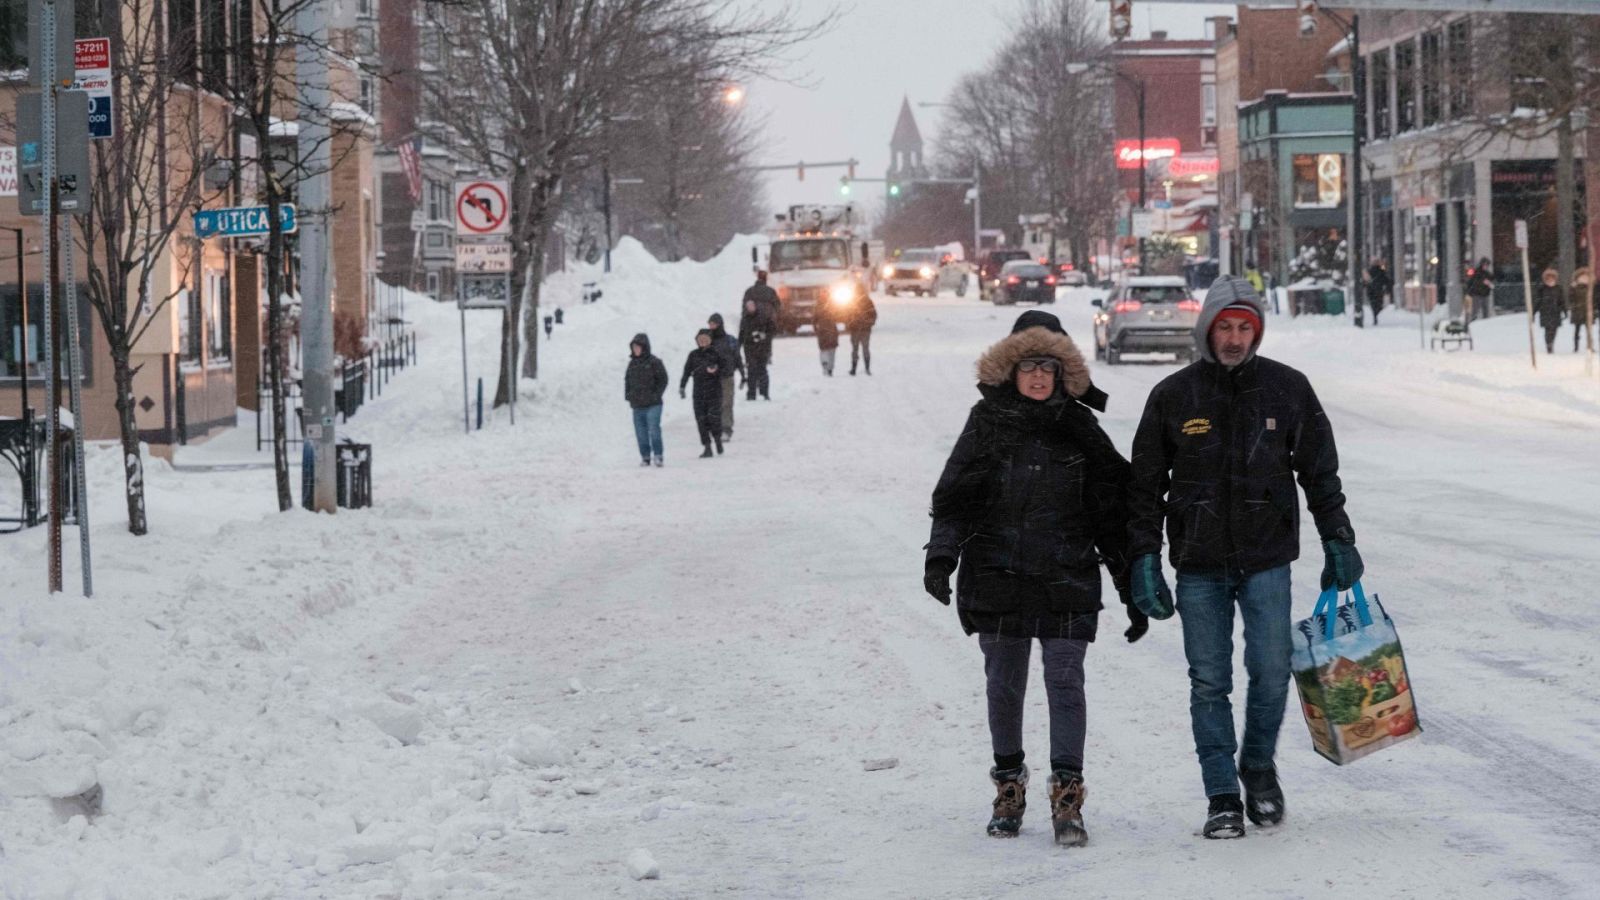 Varias personas caminan por una calle cubierta de nieve en Búfalo en el estado de Nueva York donde el presidente de Estados Unidos ha declarado la emergencia